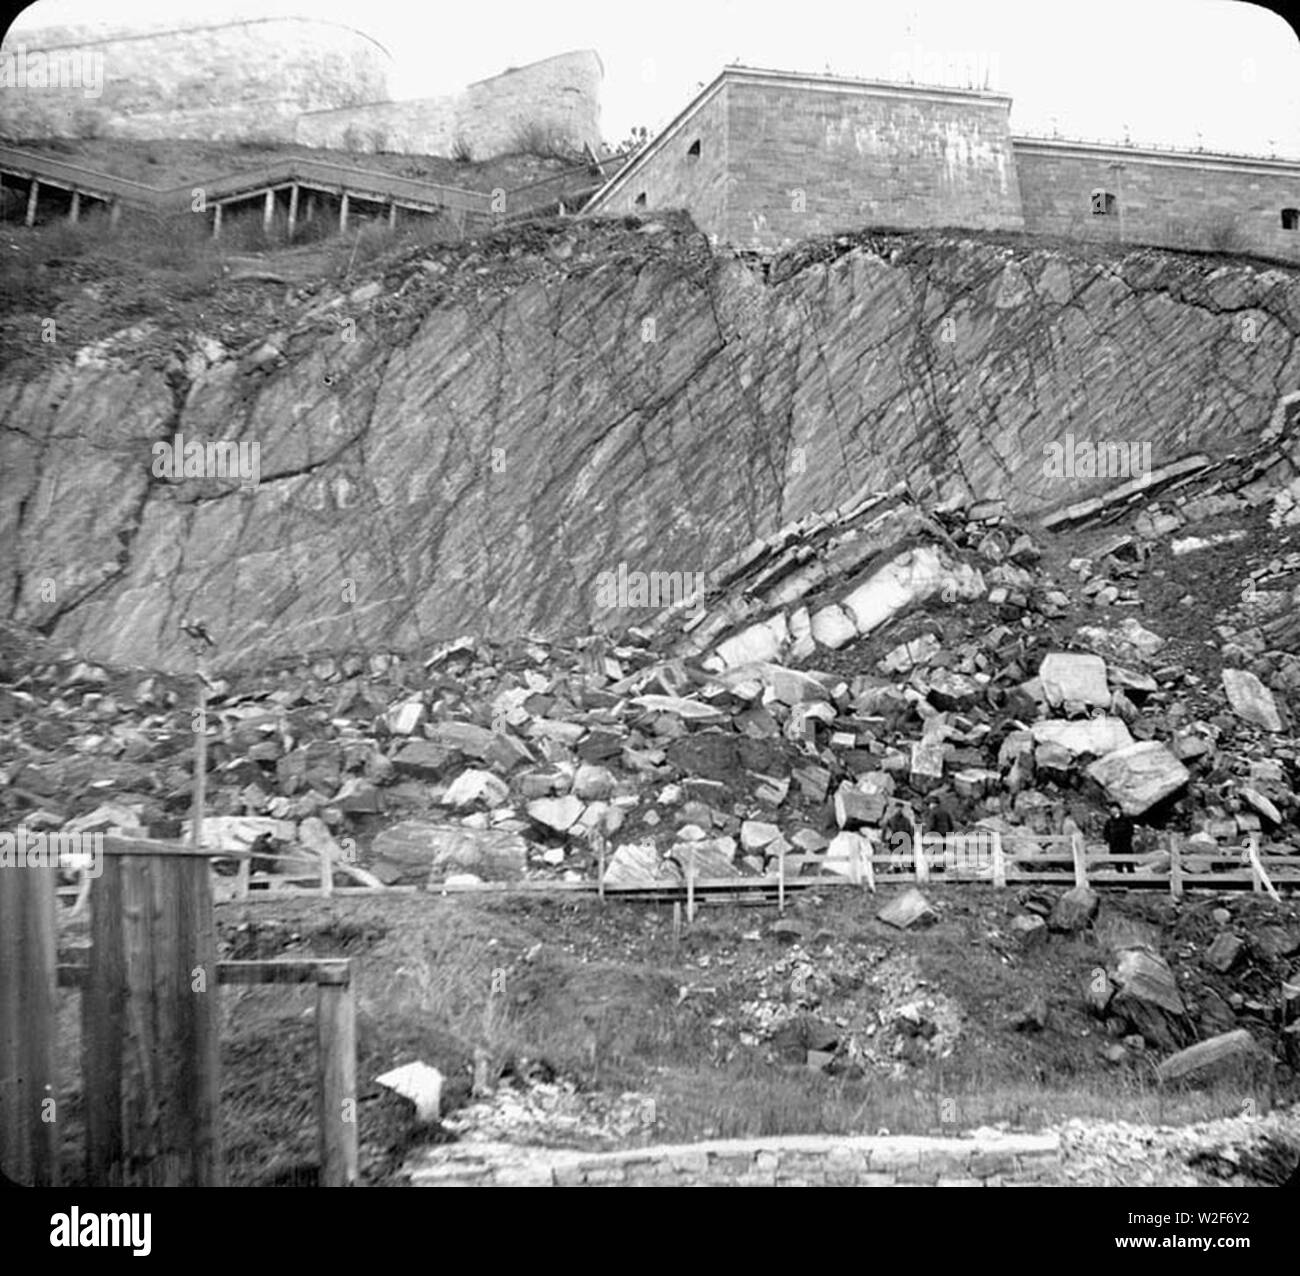 Champlain St. after landslide. Stock Photo